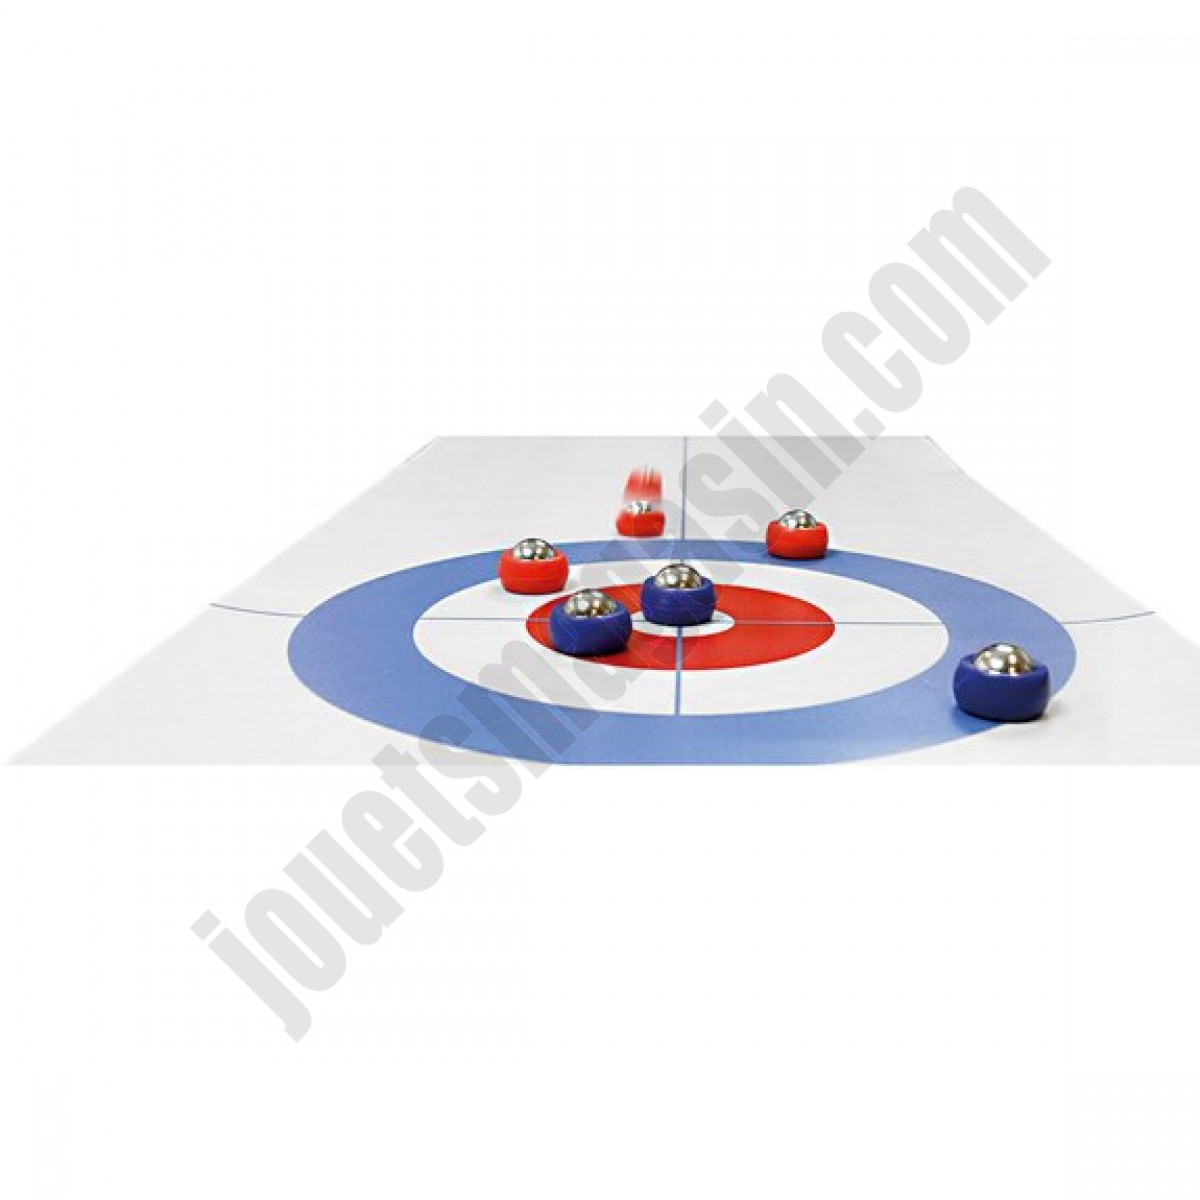 Curling de table En promotion - Curling de table En promotion